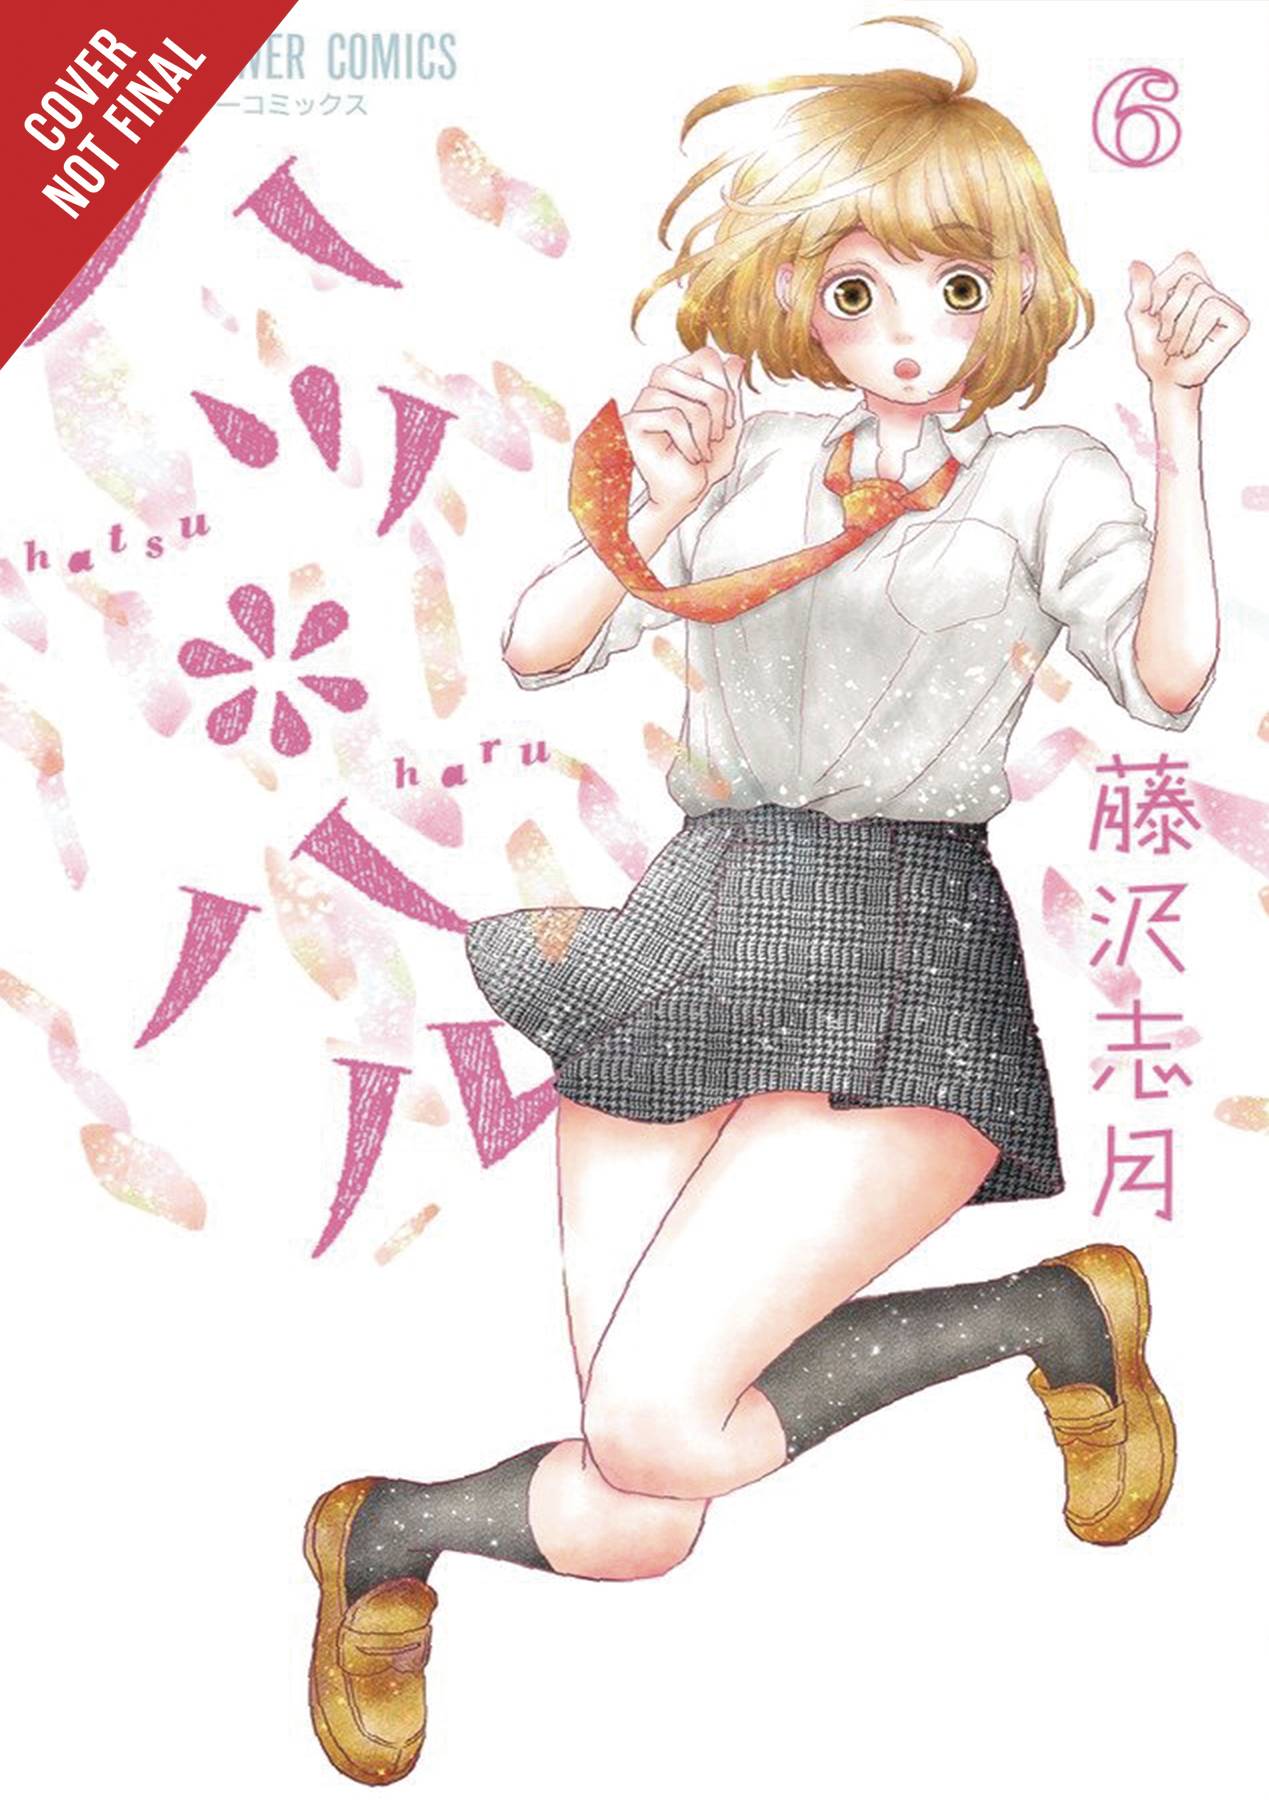 Hatsu Haru Manga Volume 6